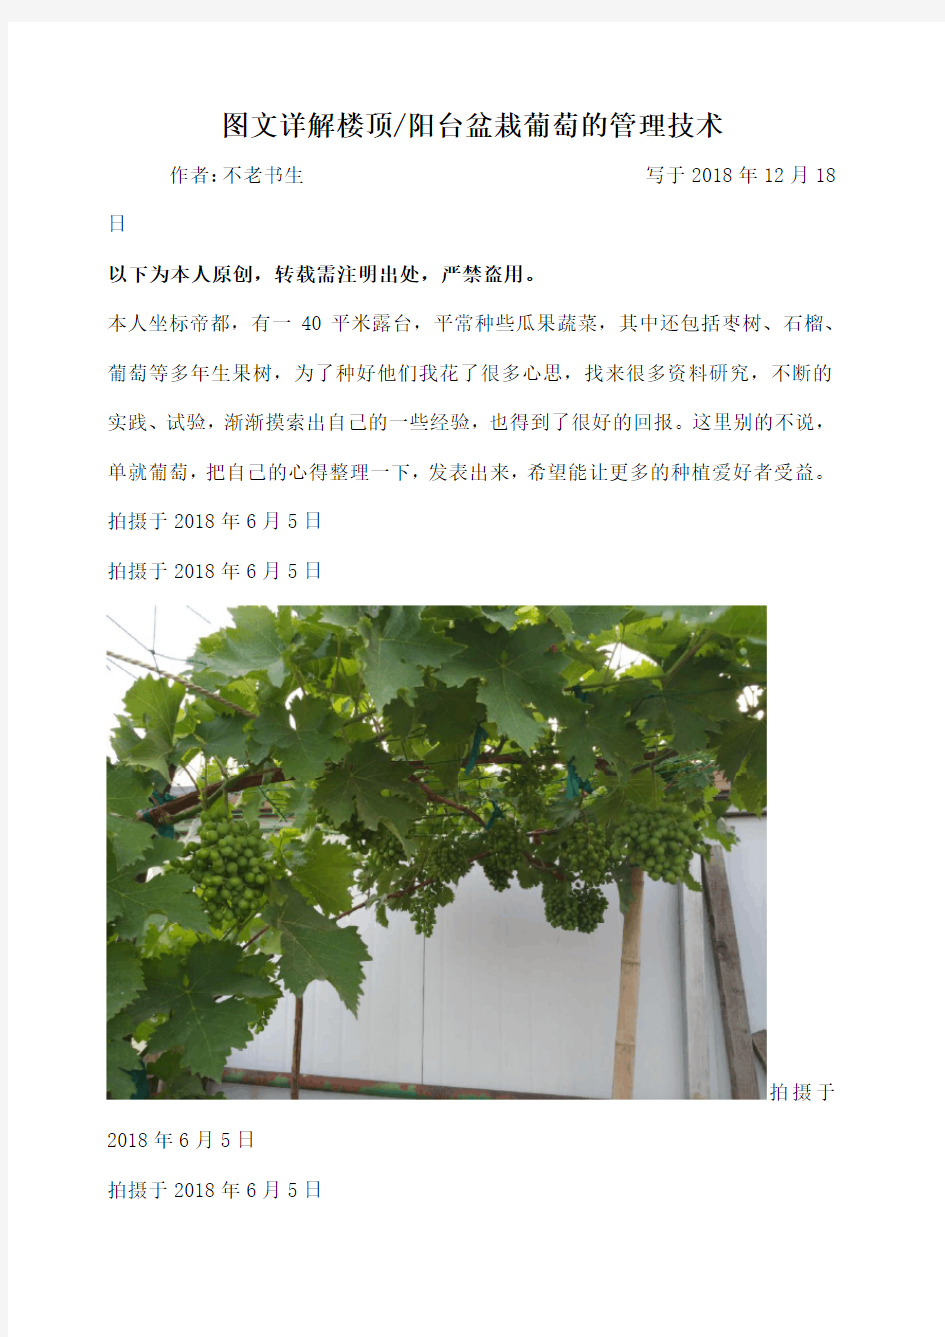 图文详解楼顶阳台盆栽葡萄的管理技术